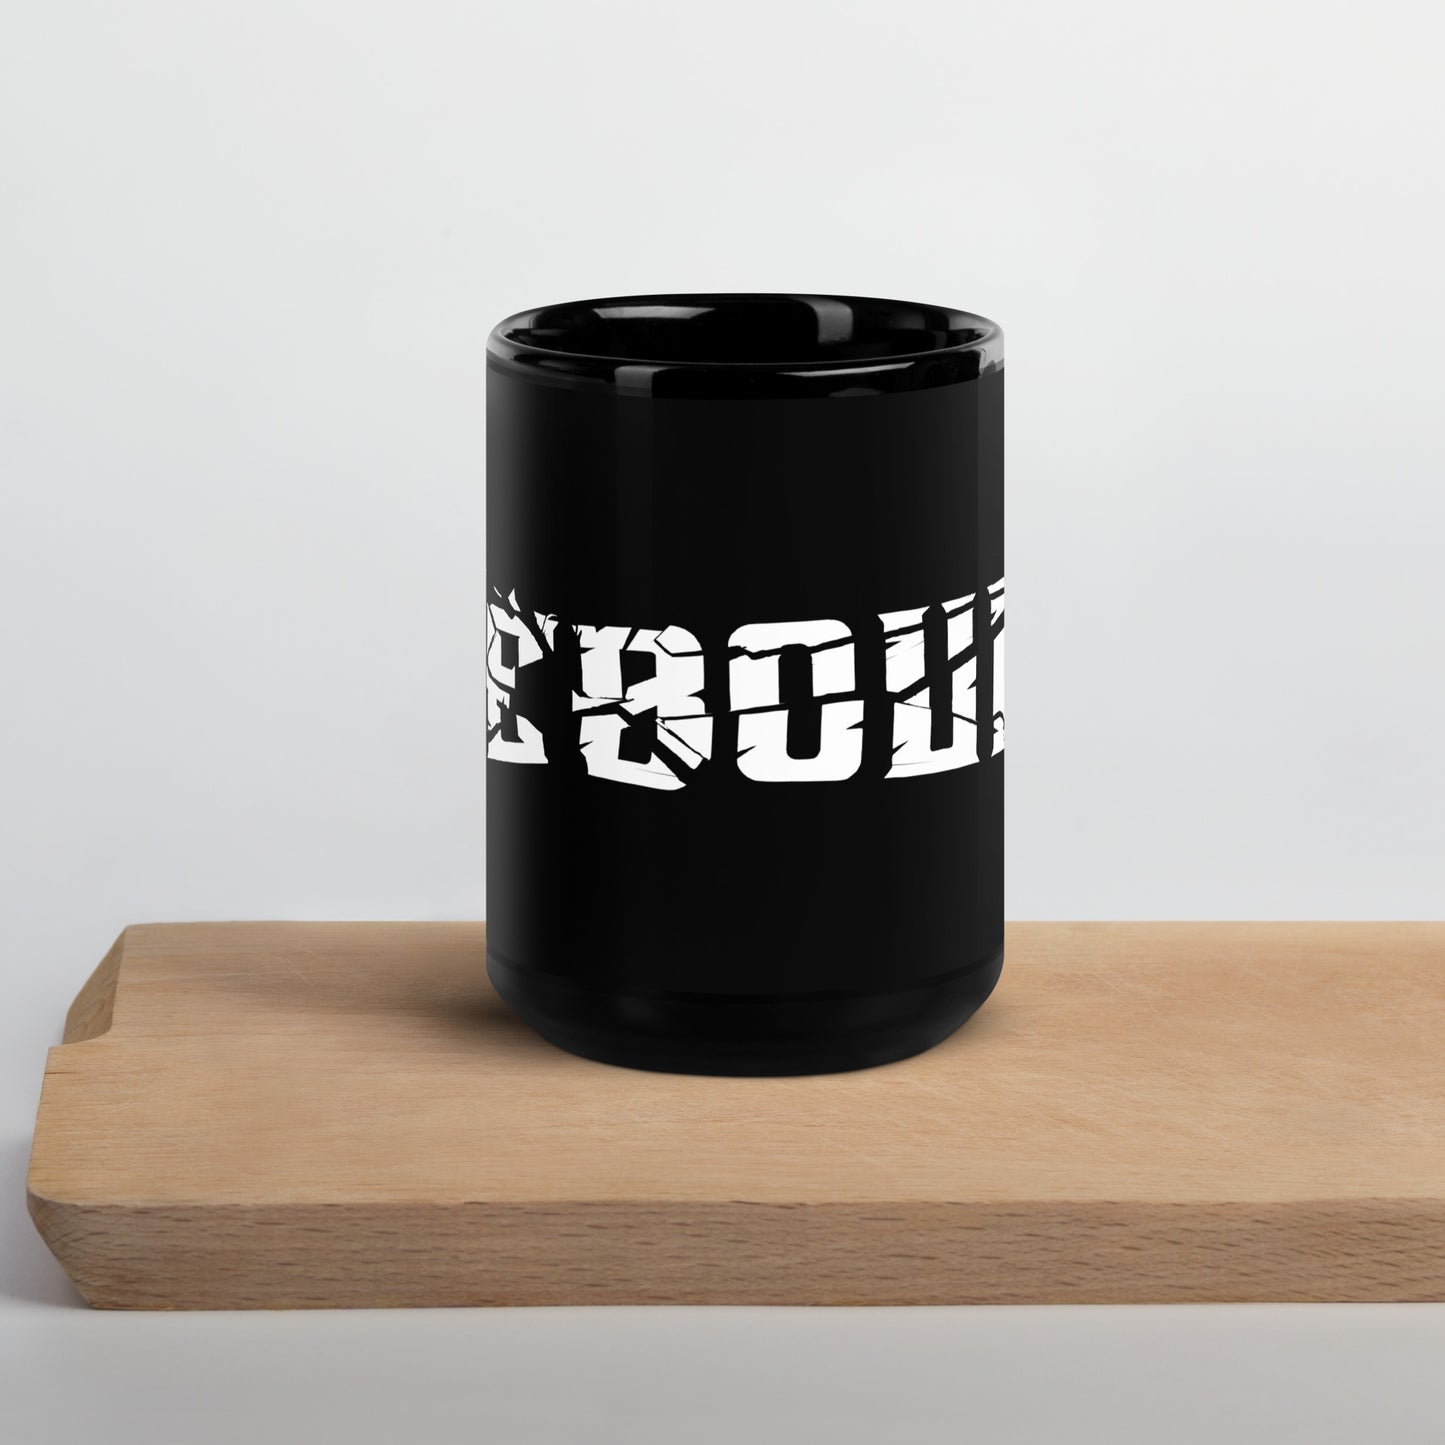 Icebound Logo - Mug